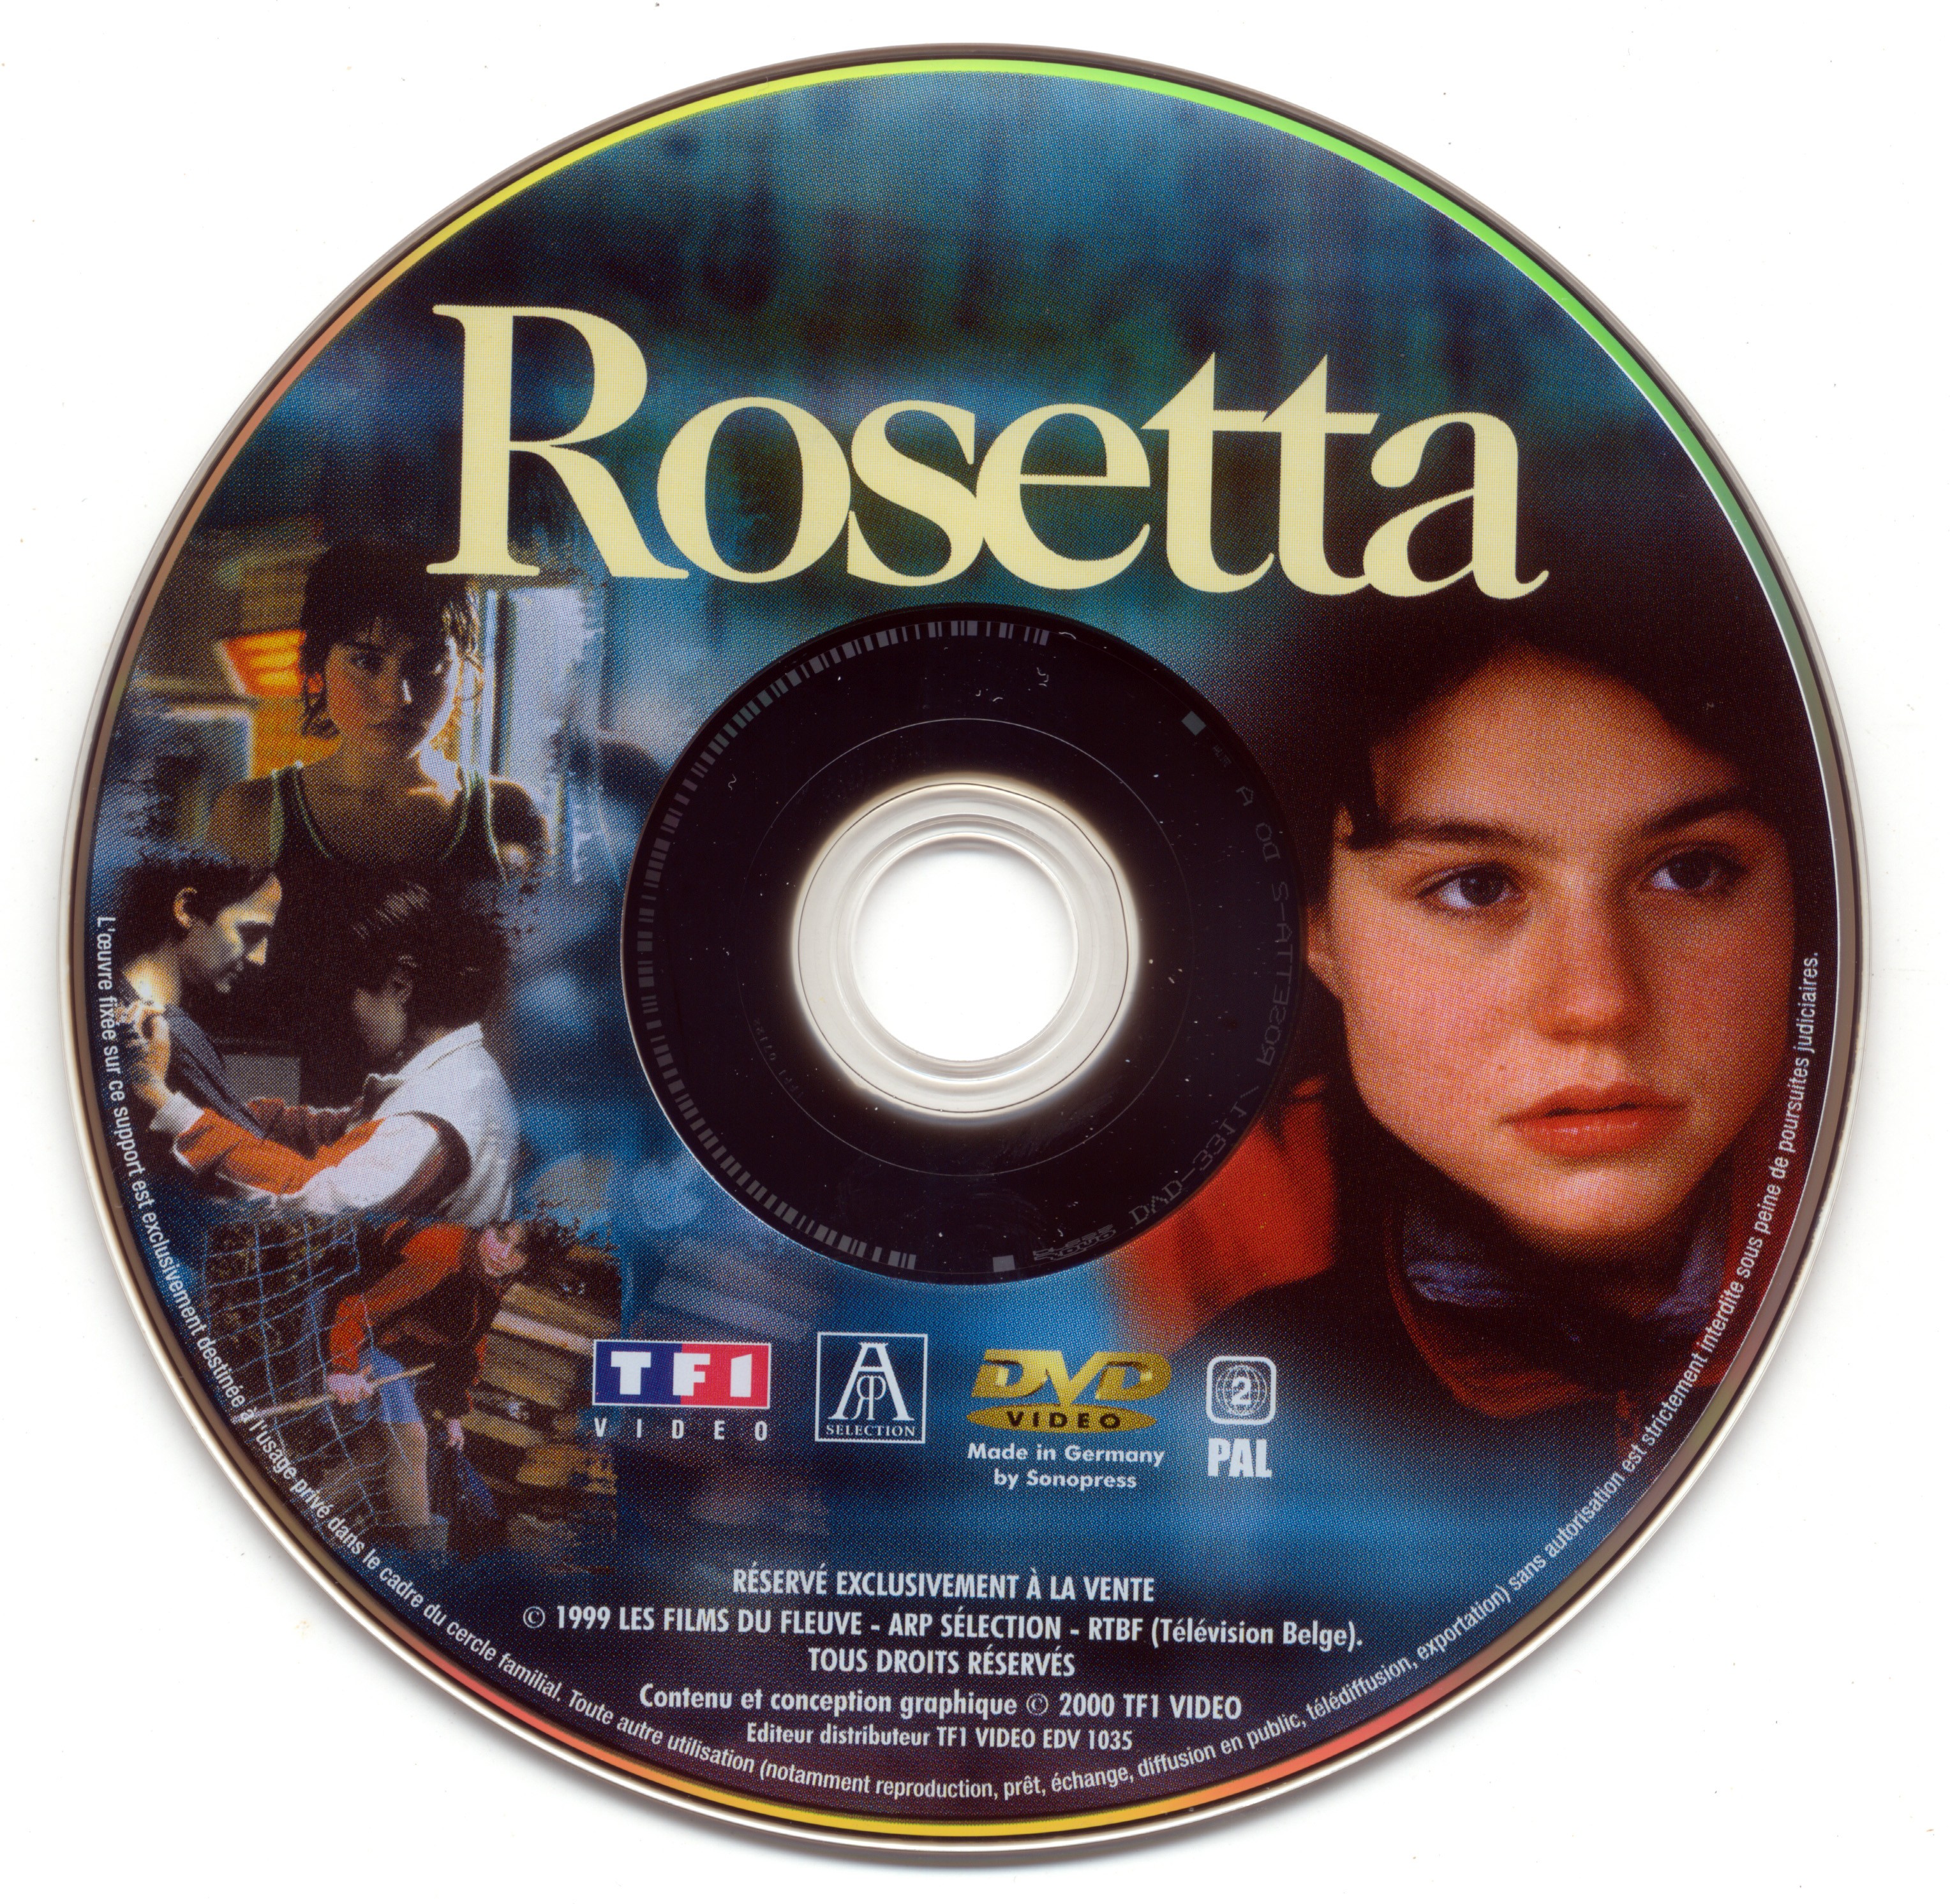 Rosetta v2